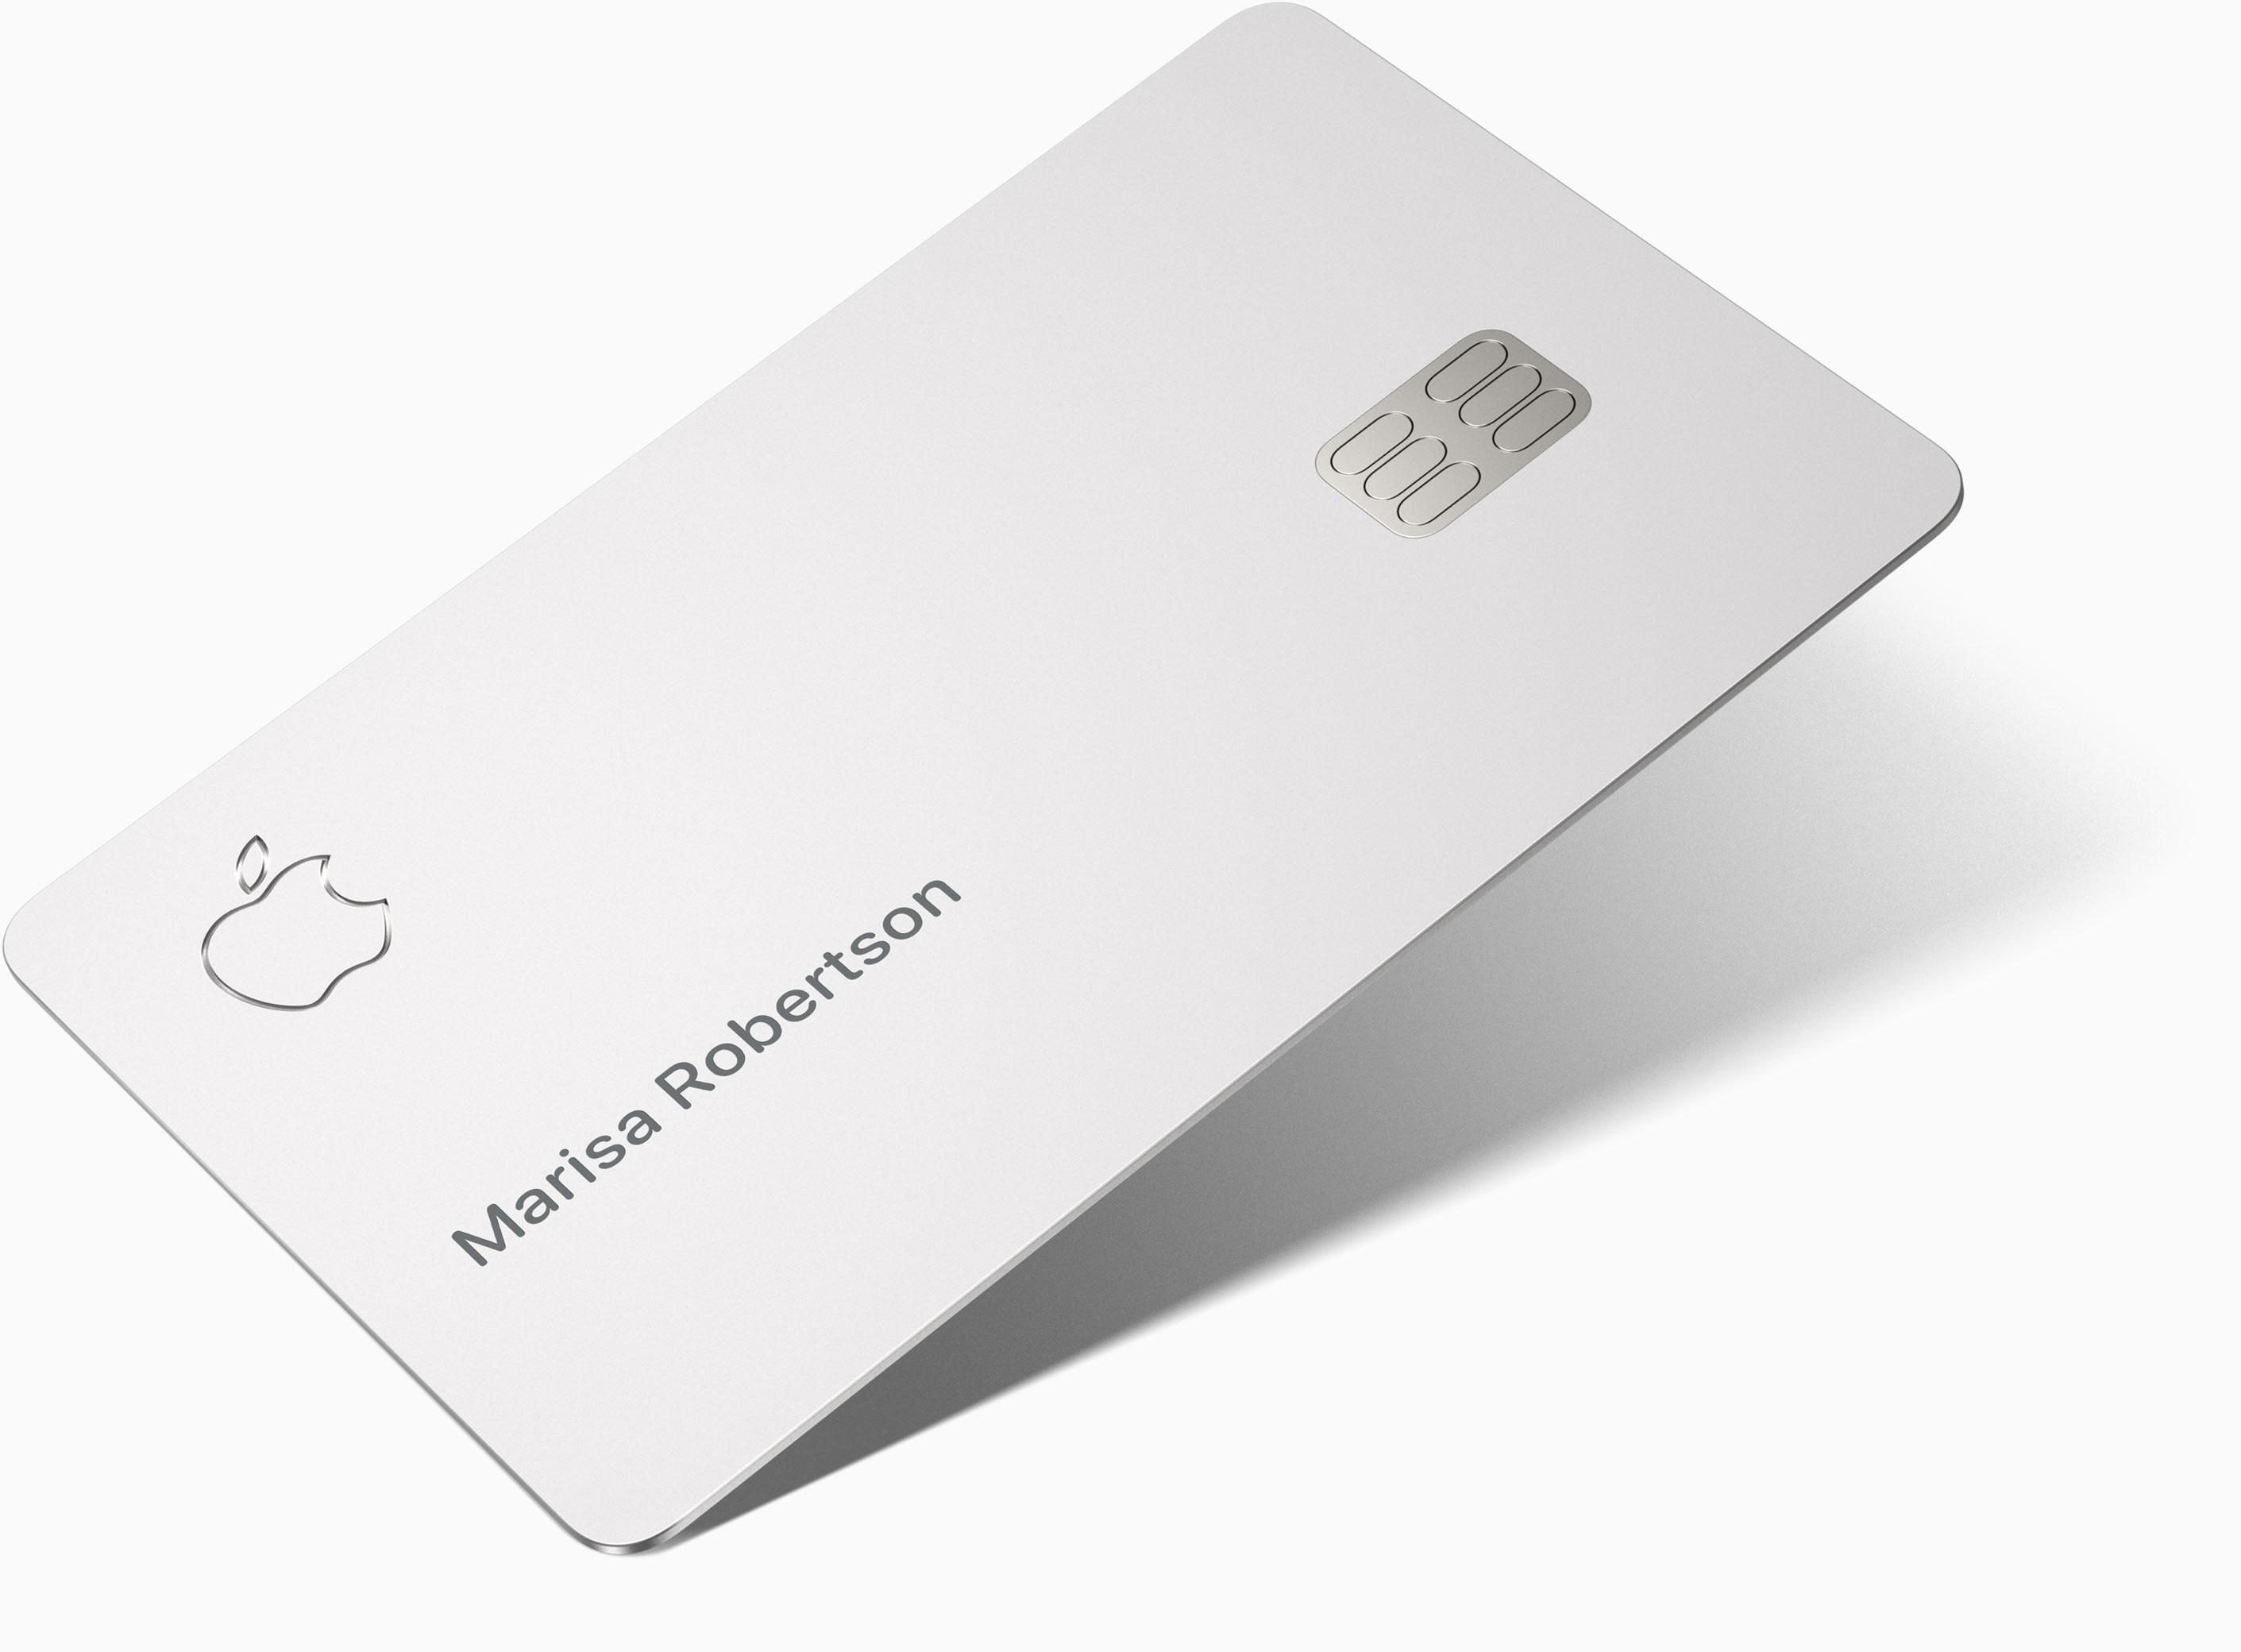 Kartu kredit Apple Kartu sudah di bulan Agustus. Merek dagang itu juga terdaftar di Polandia